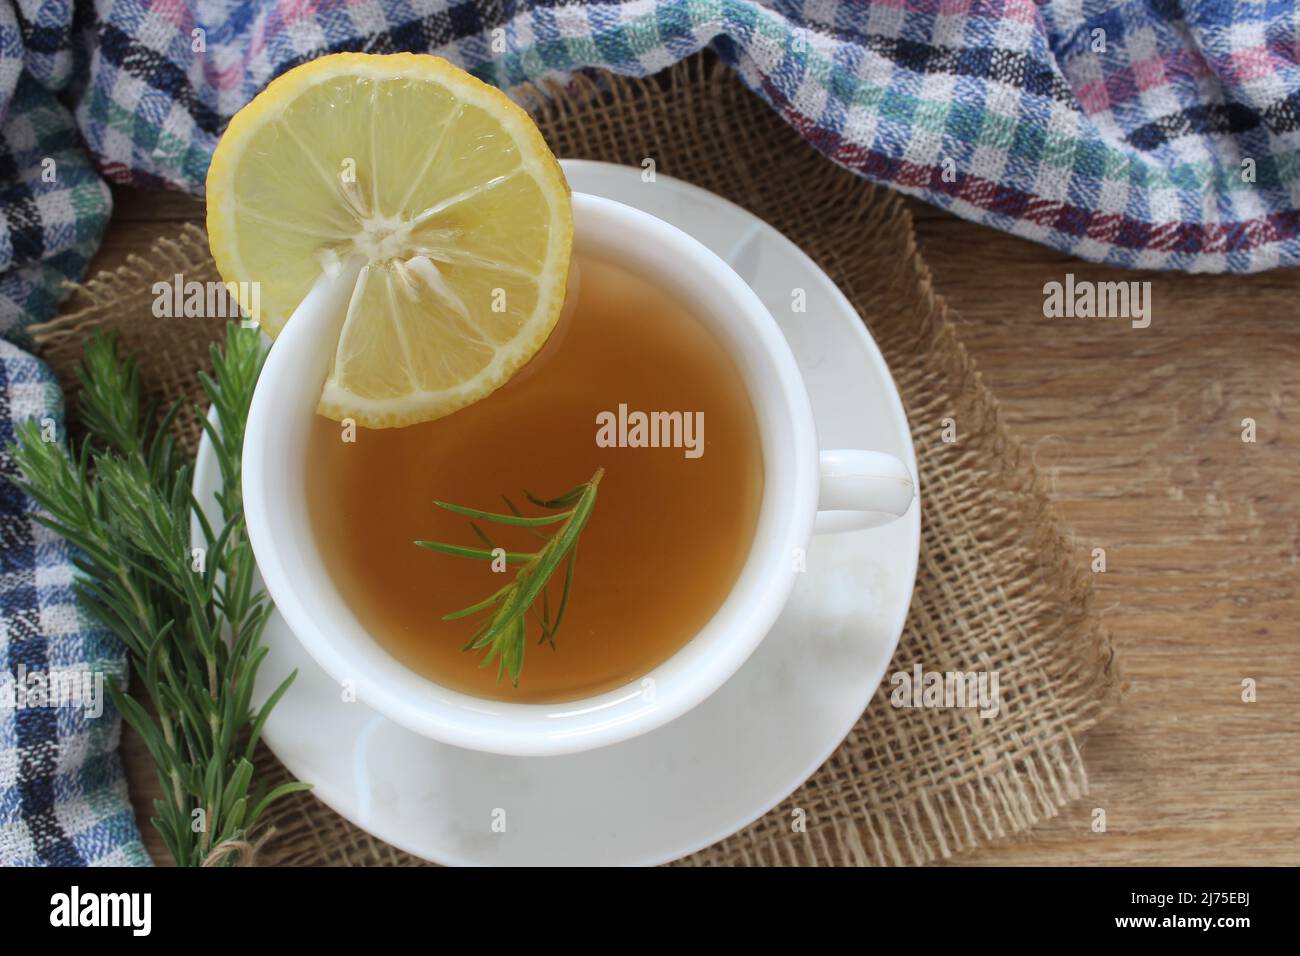 Une tasse de thé au romarin et une tranche de citron dans la cuisine, vue de dessus, tisane pour l'idée de concept d'hiver. Banque D'Images